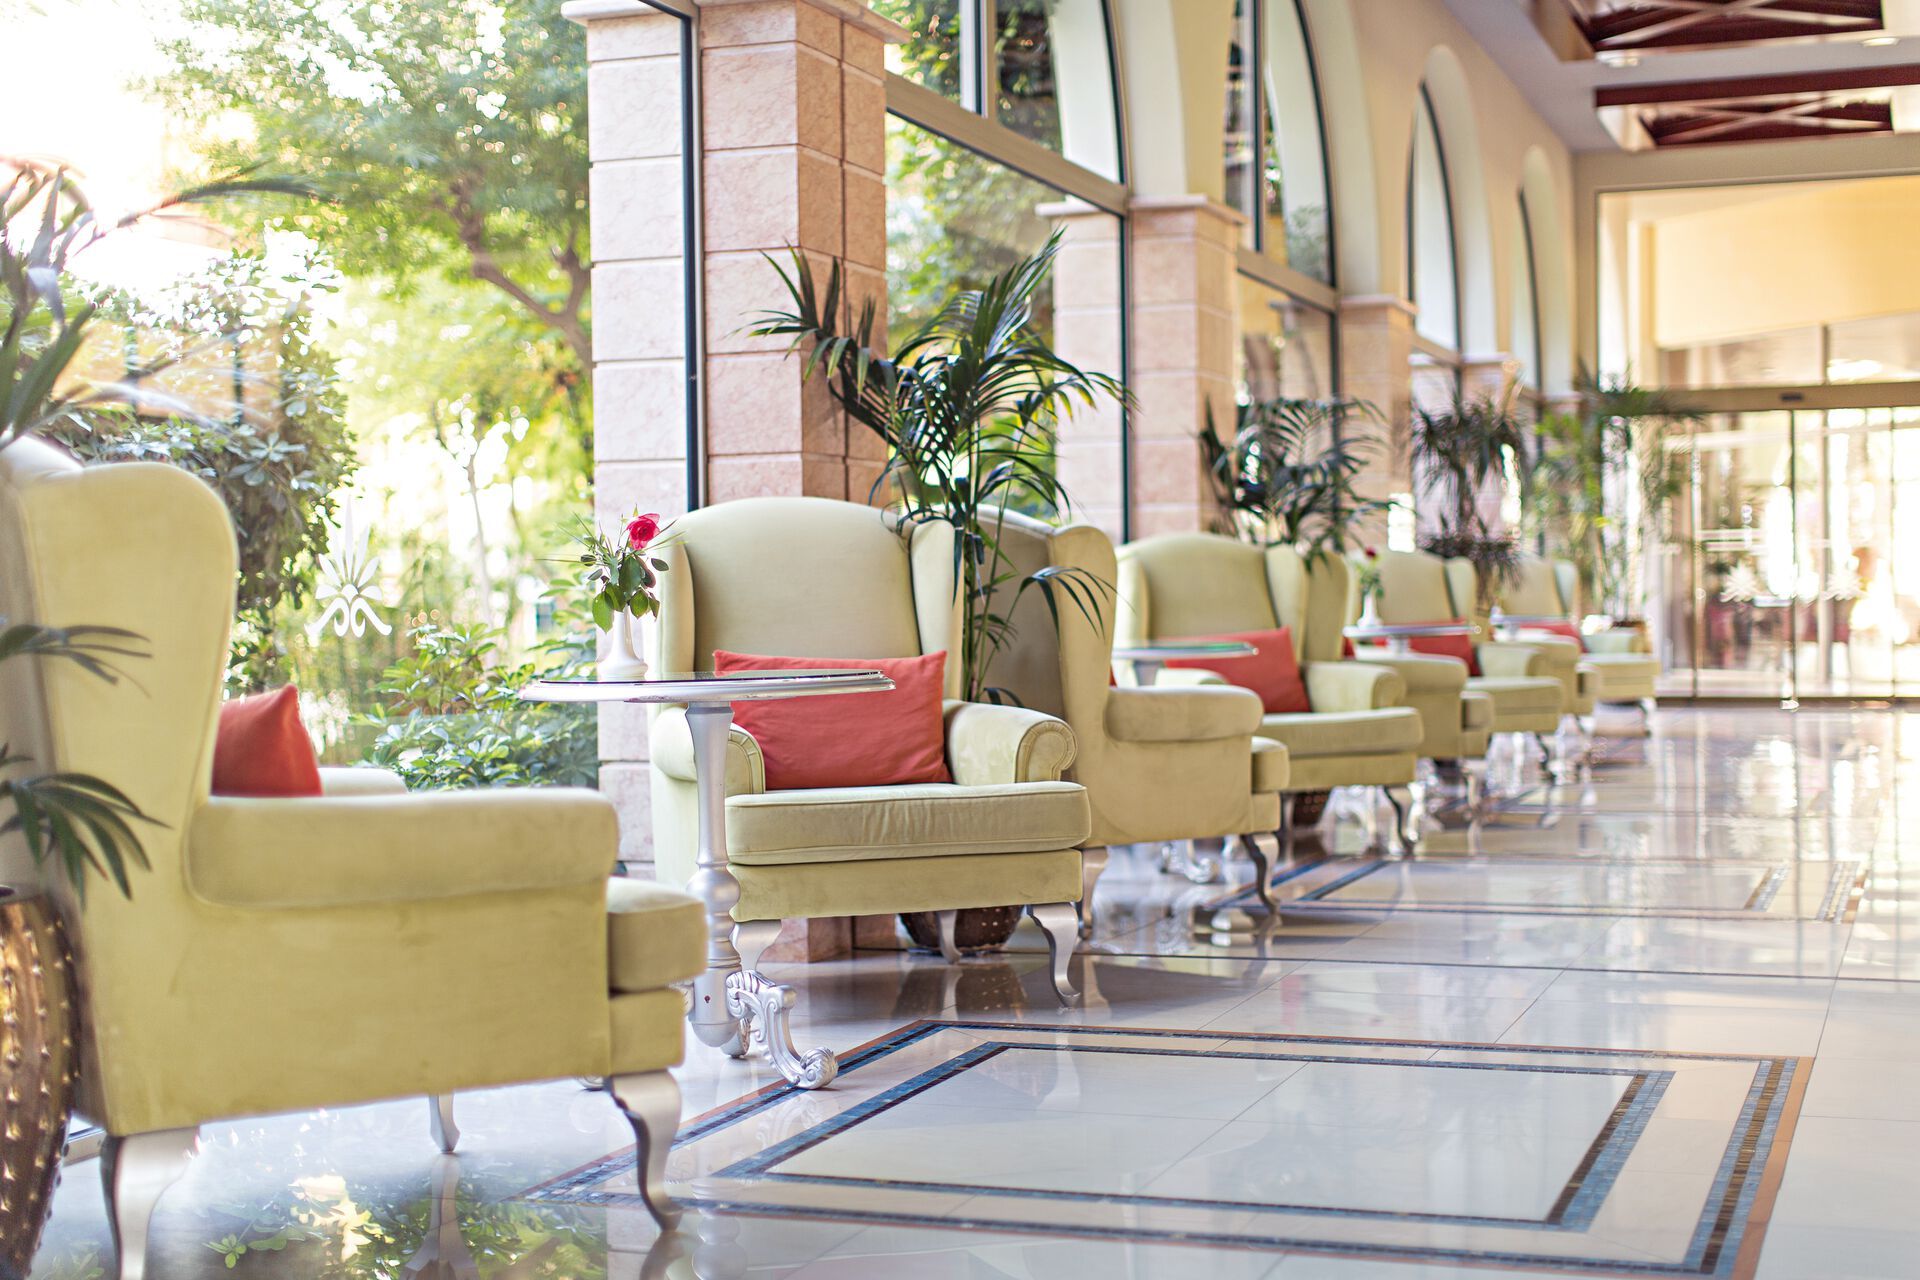 Grèce - Iles grecques - Rhodes - Hôtel Atrium Palace Thalasso Spa Resort & Villas 5*